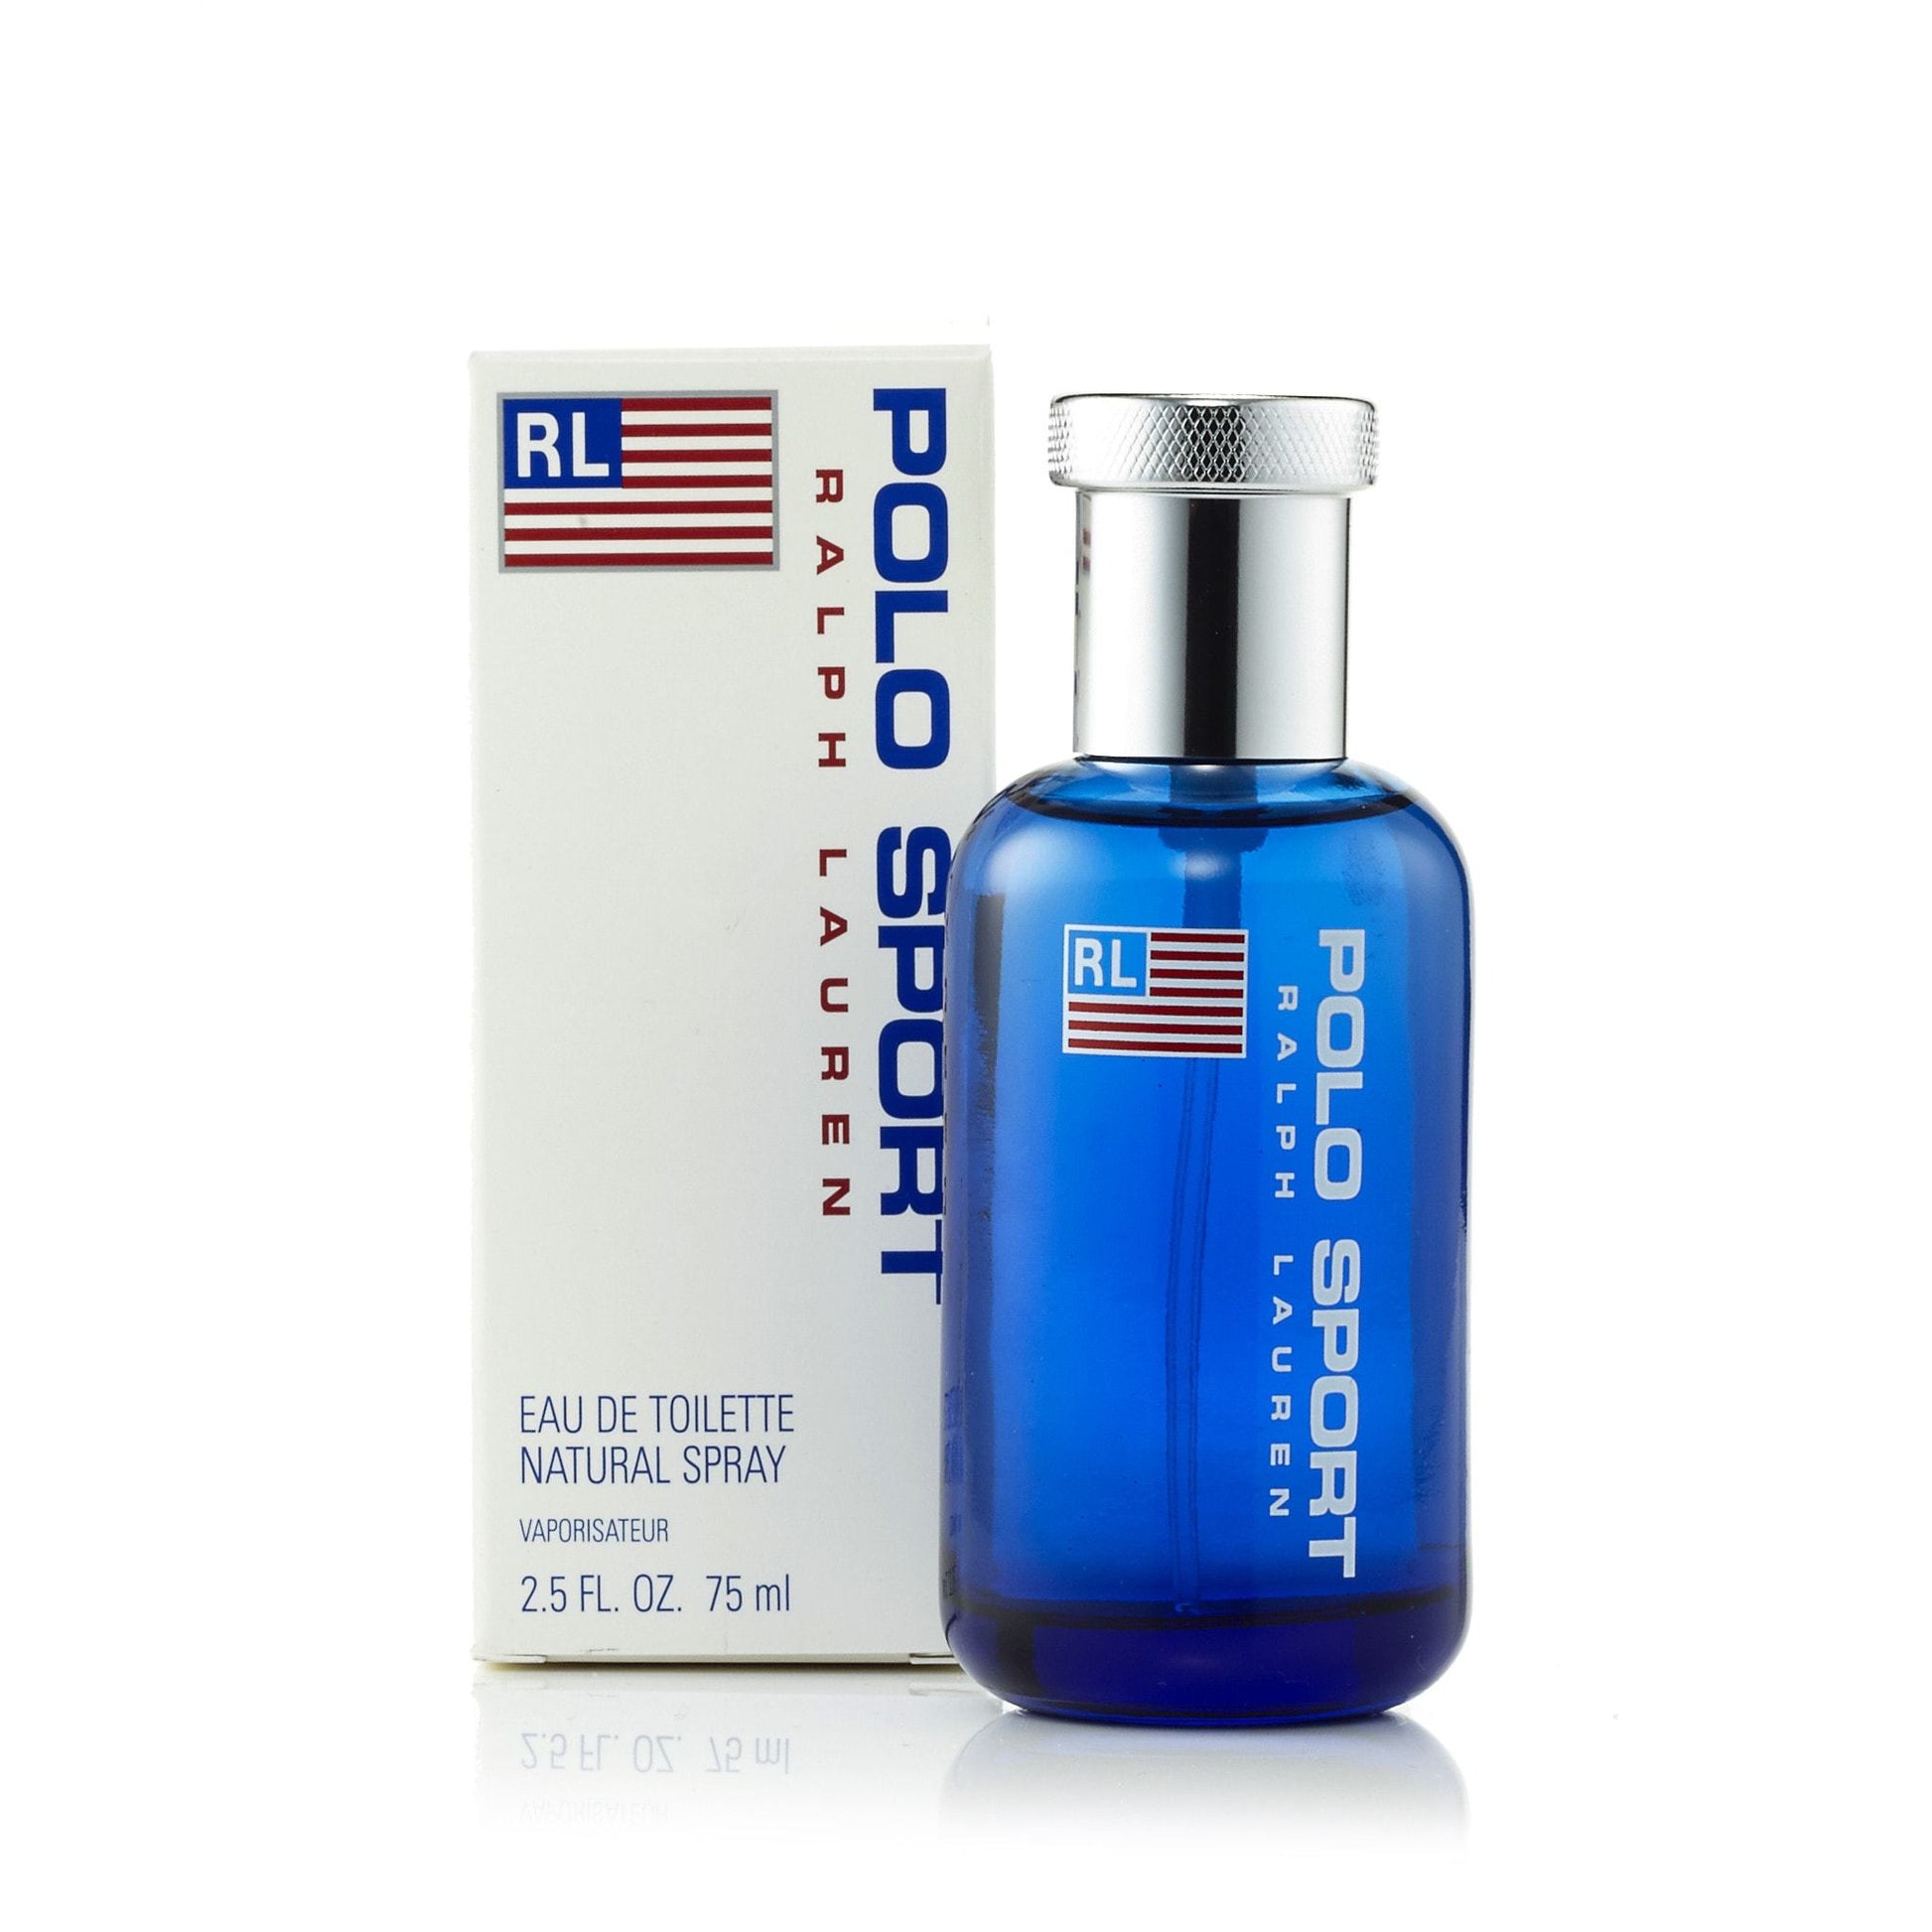 Polo Sport Eau de Toilette Spray for Men by Ralph Lauren, Product image 1